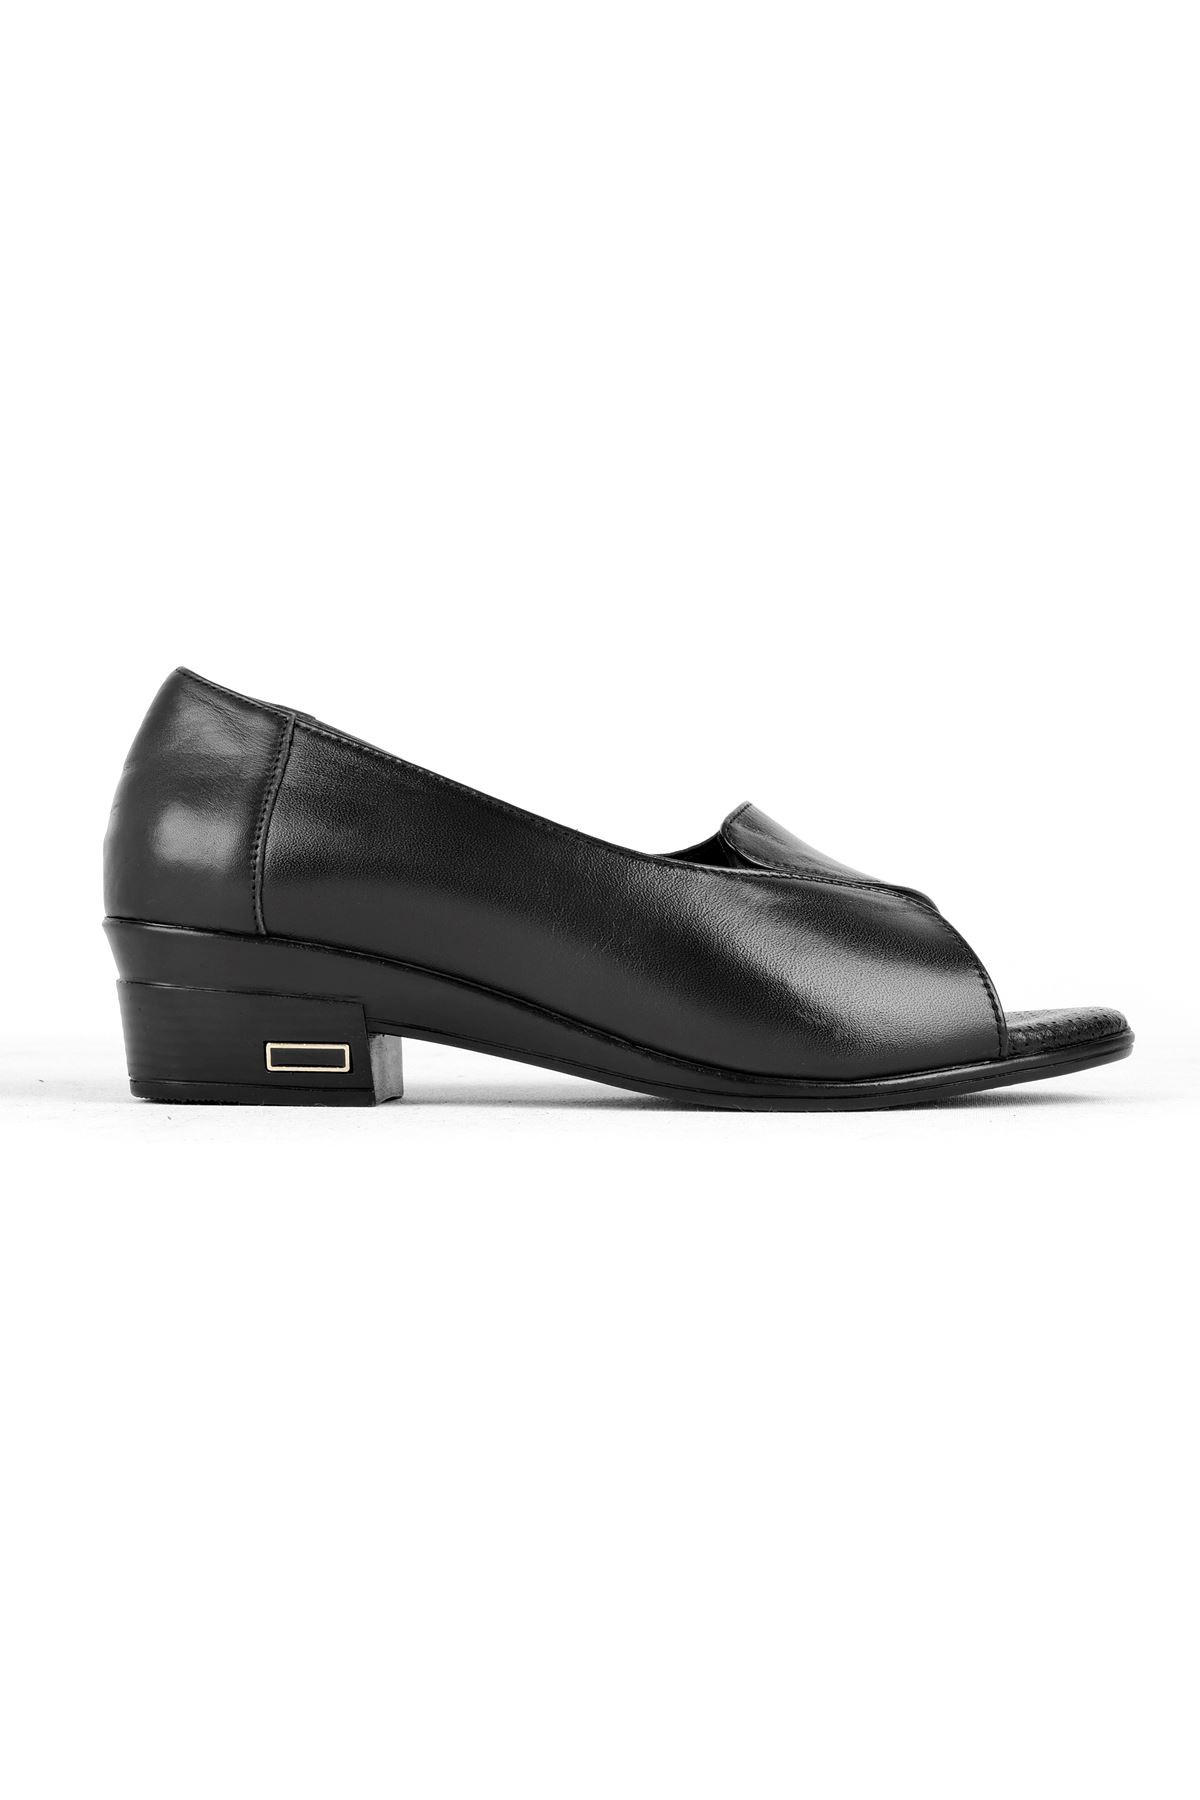 Suvy Önü Açık Kadın Hakiki Deri Topuklu Ayakkabı B3181 - Siyah